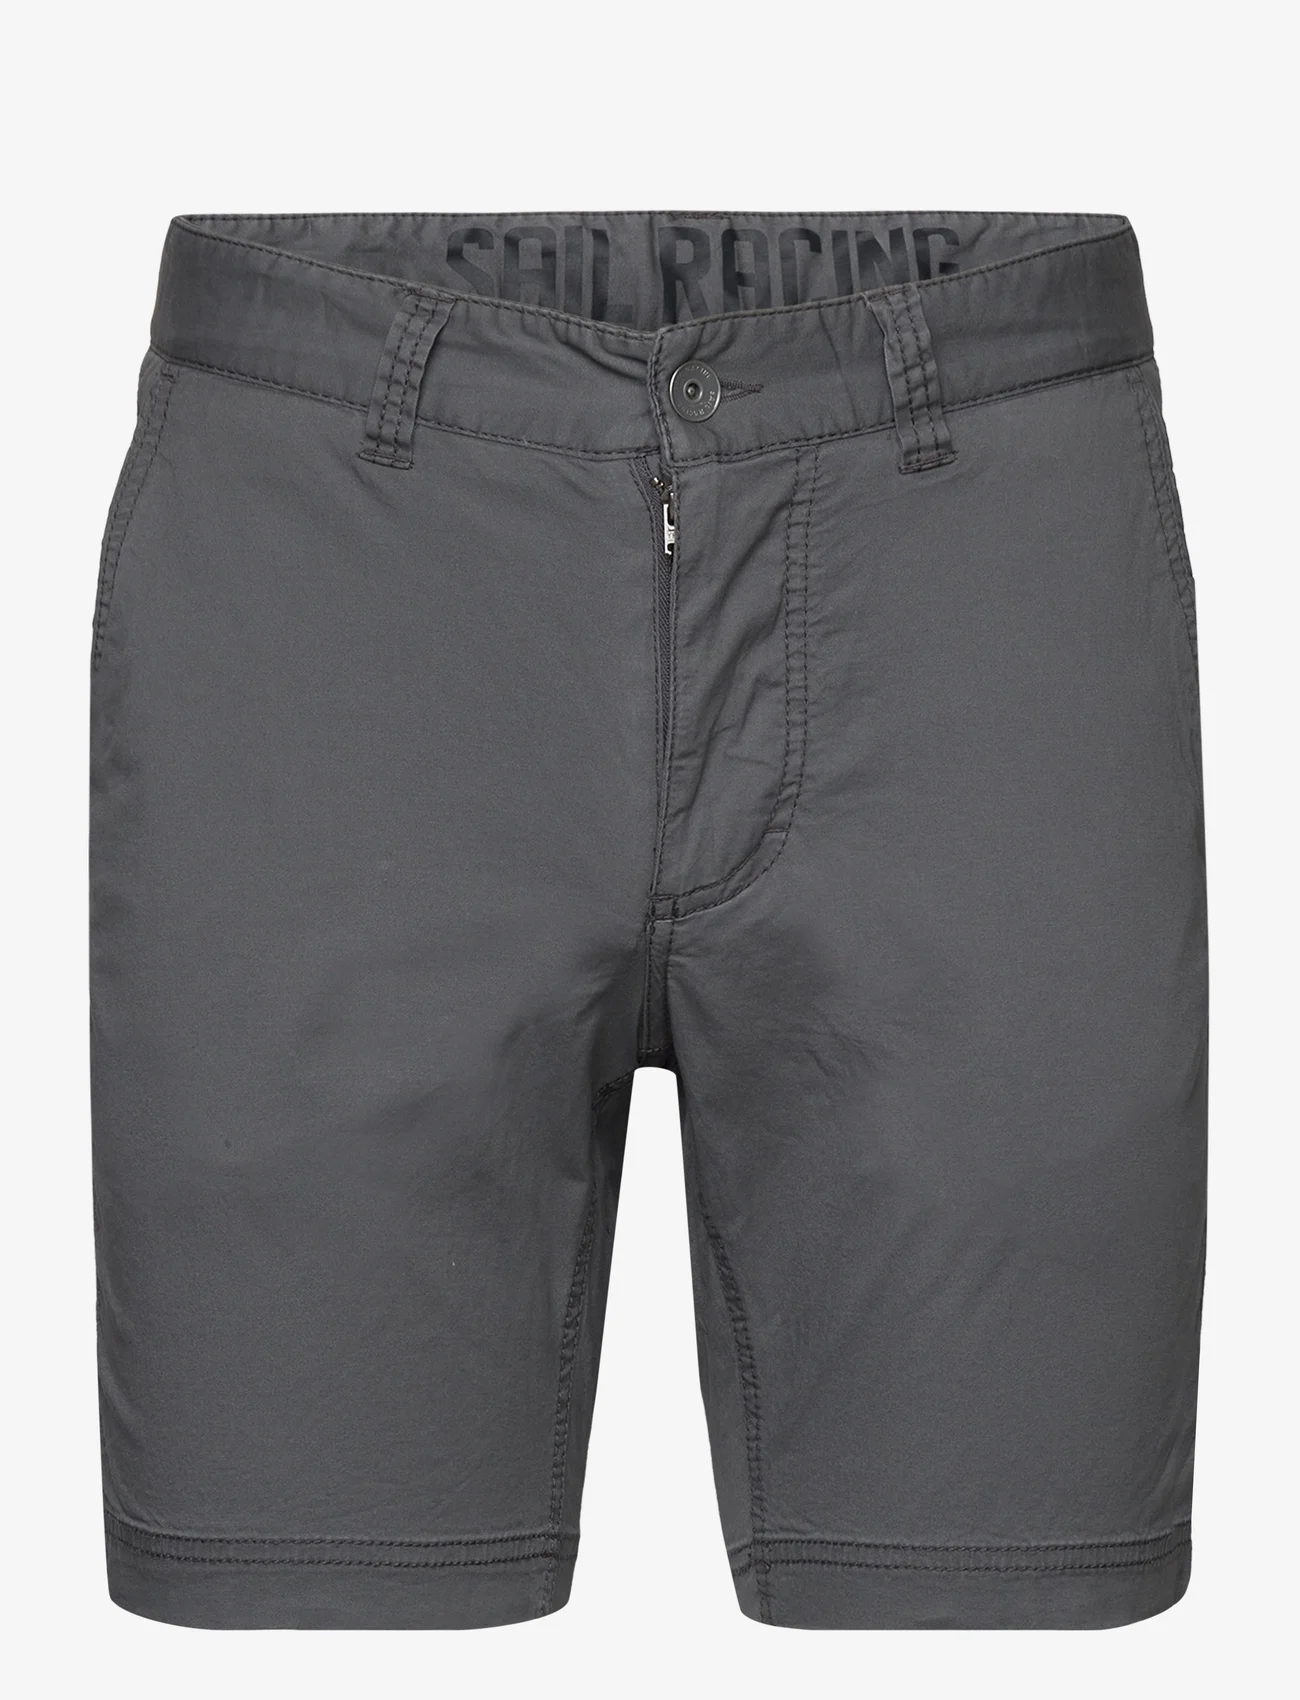 Sail Racing - HELMSMAN CHINO SHORTS - outdoor shorts - dk grey solid - 0